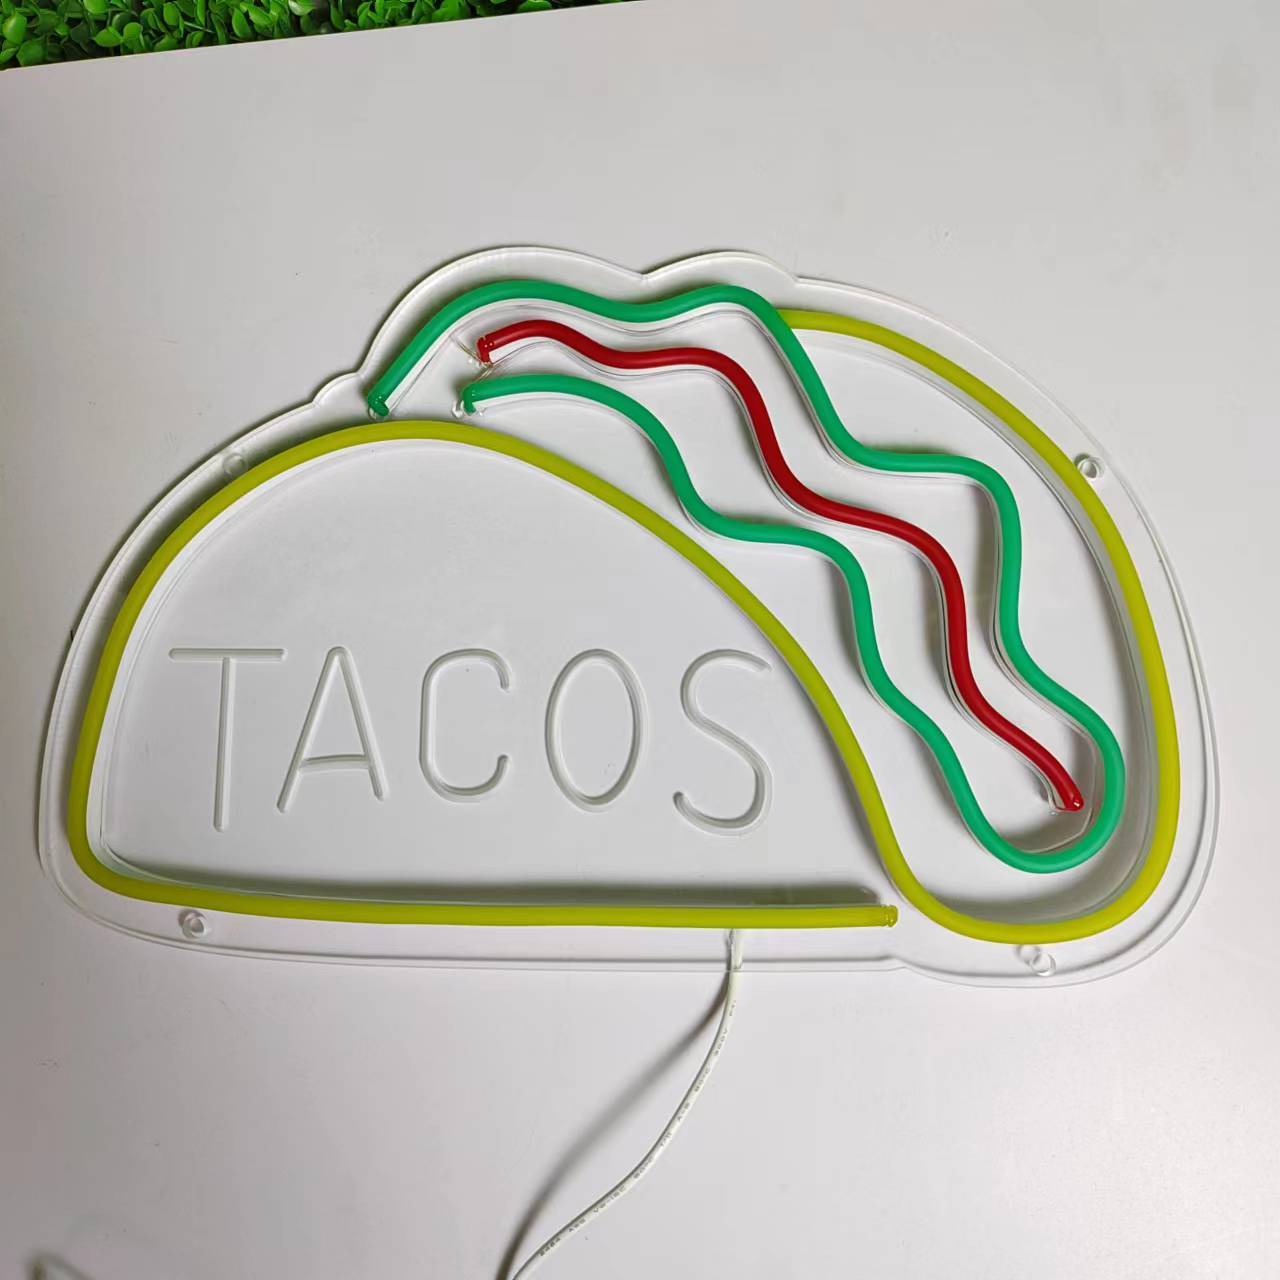 特大 LEDライト ネオンサイン 看板 タコス TACOS メキシコ料理